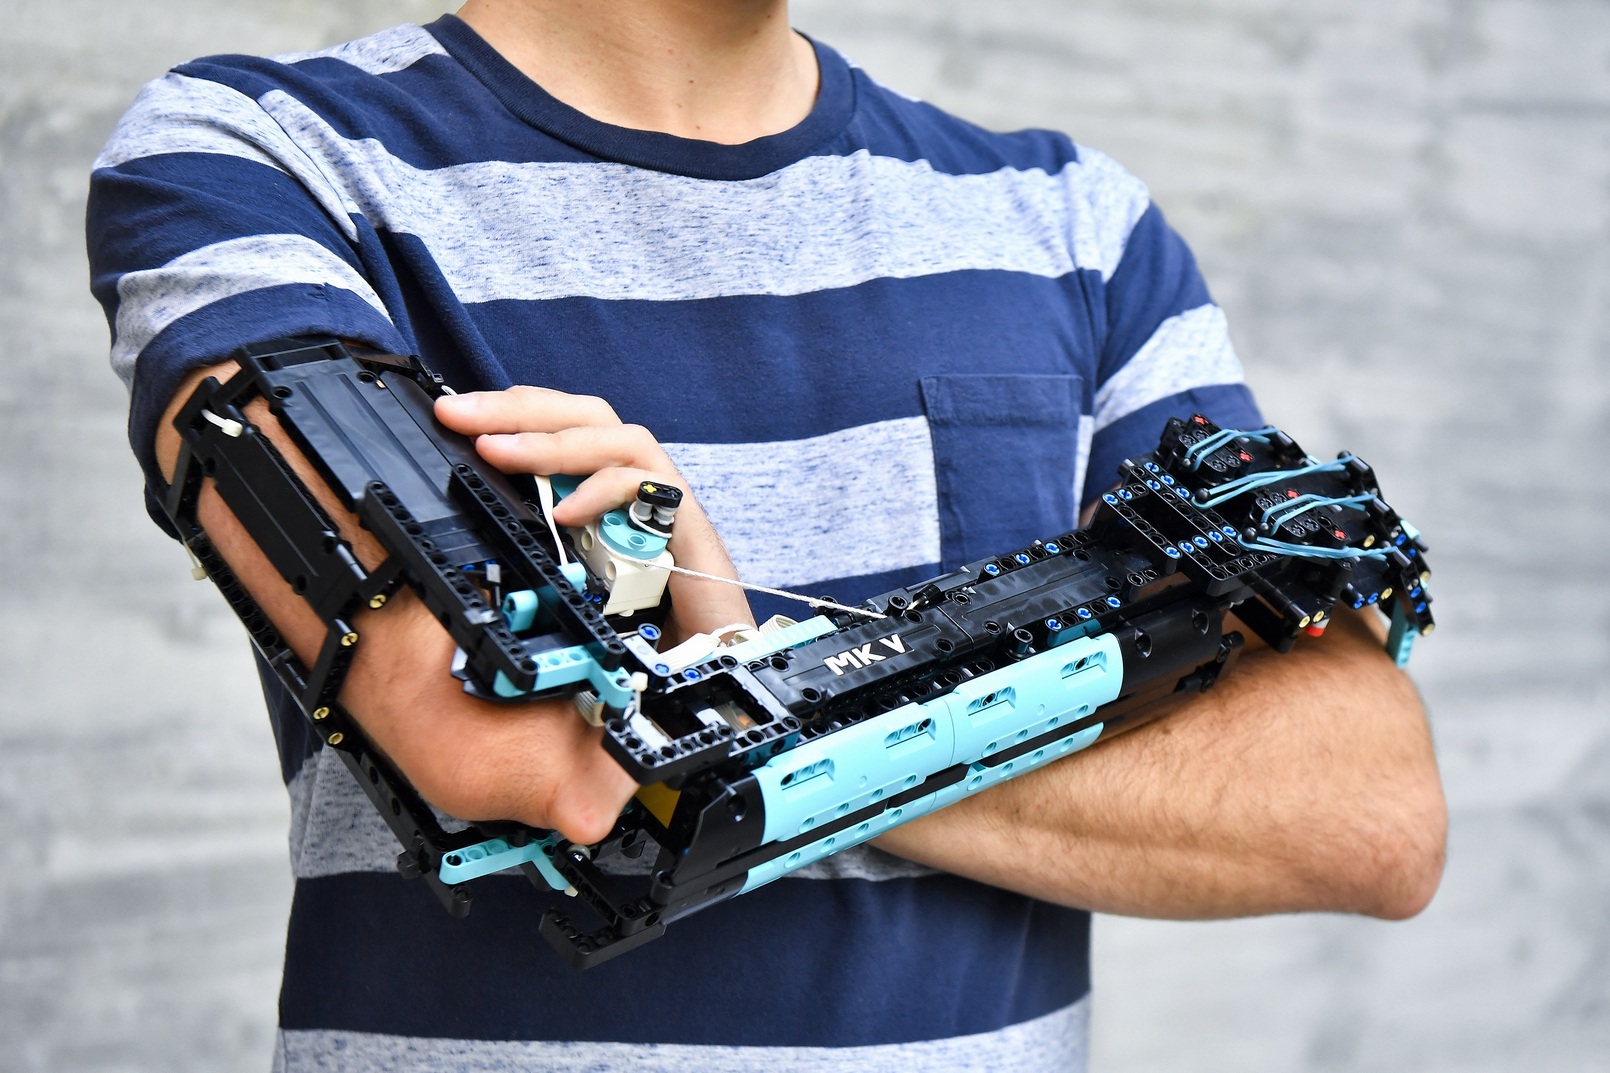 La prothèse de bras en Lego fabriquée par David Aguilar. © Pau Barrena/AFP